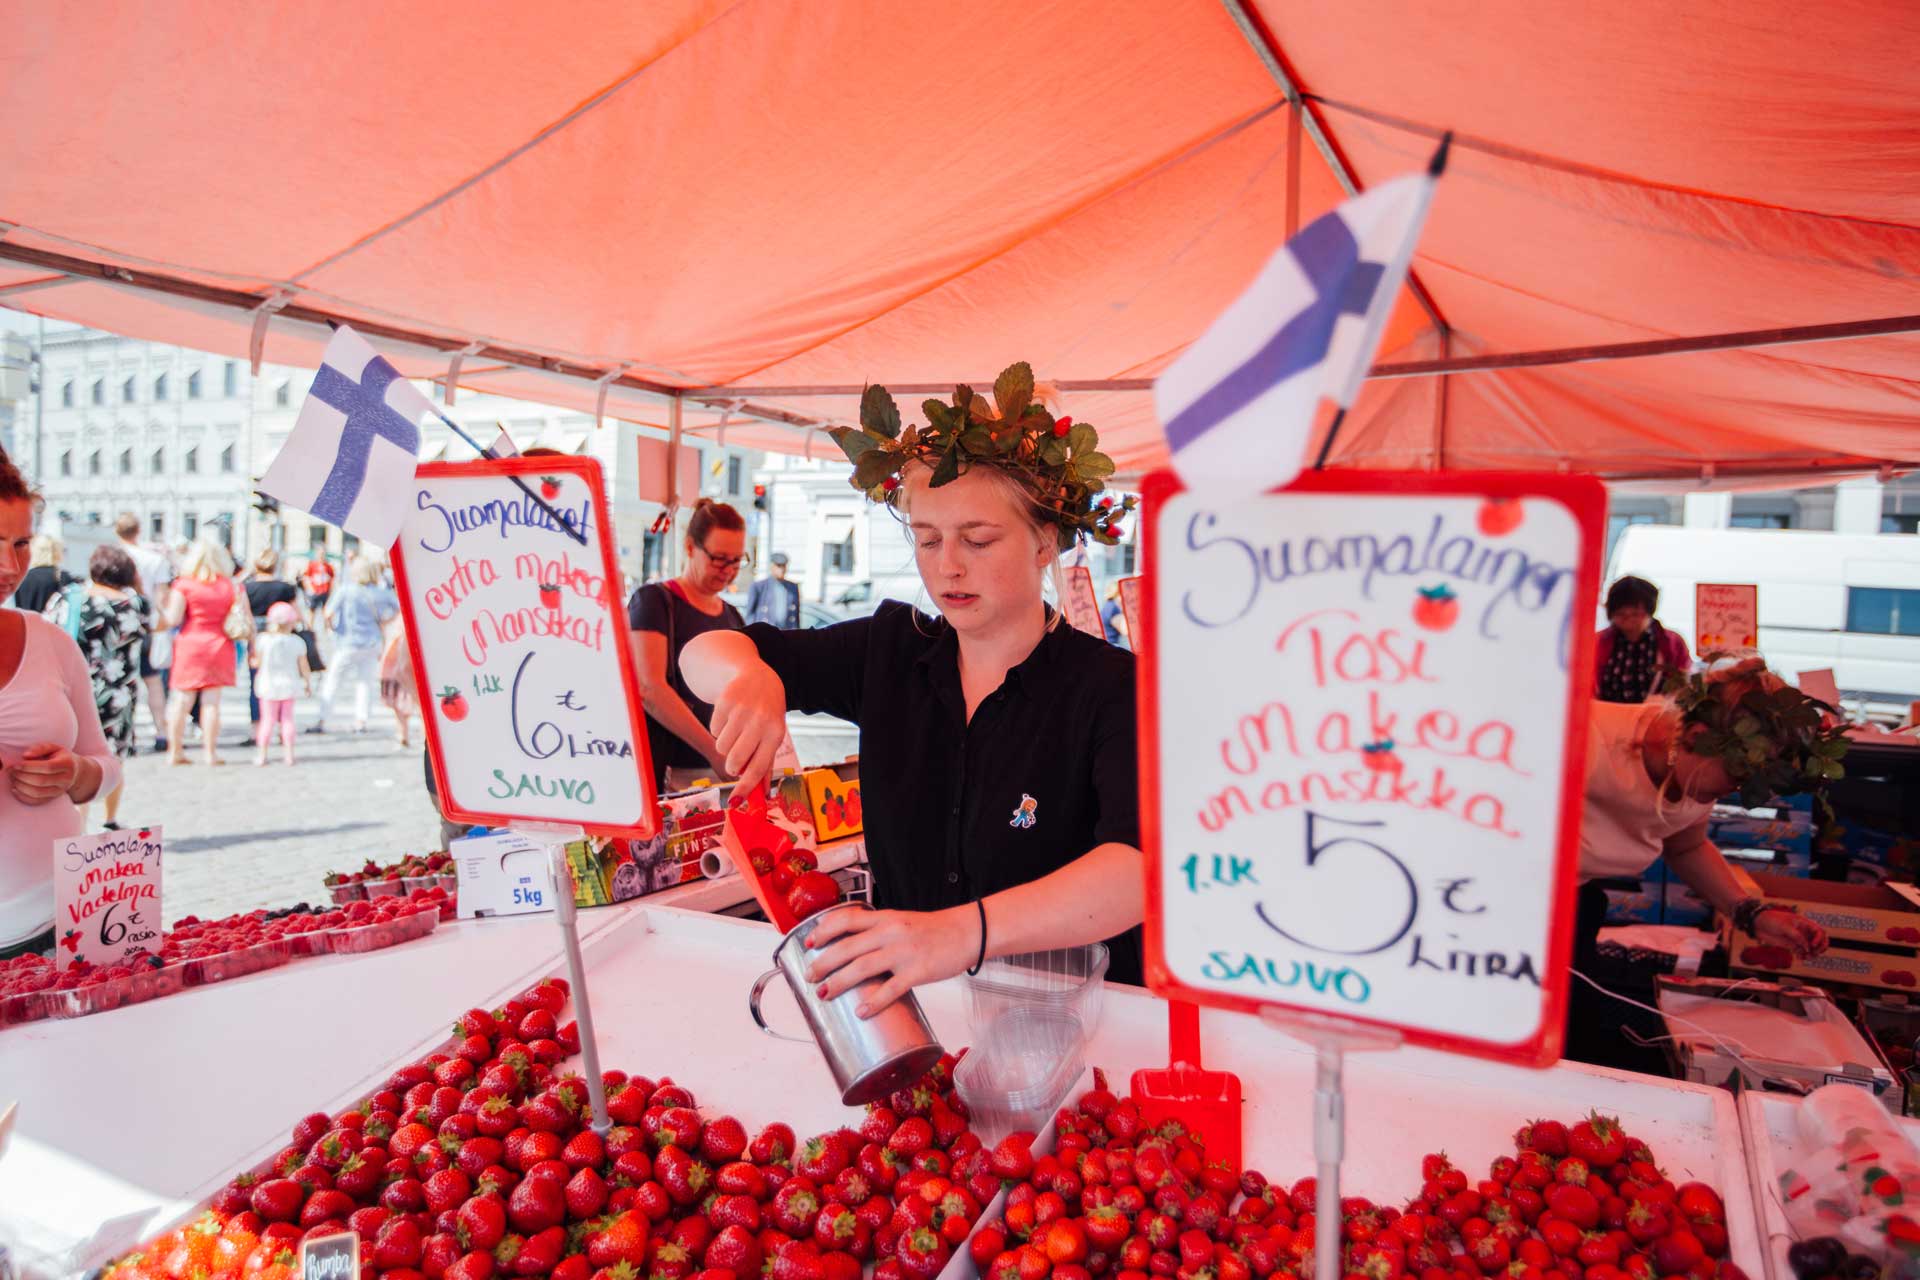 Food vendor at Market Square in Helsinki, Finland - Julia Kivela, Visit Finland